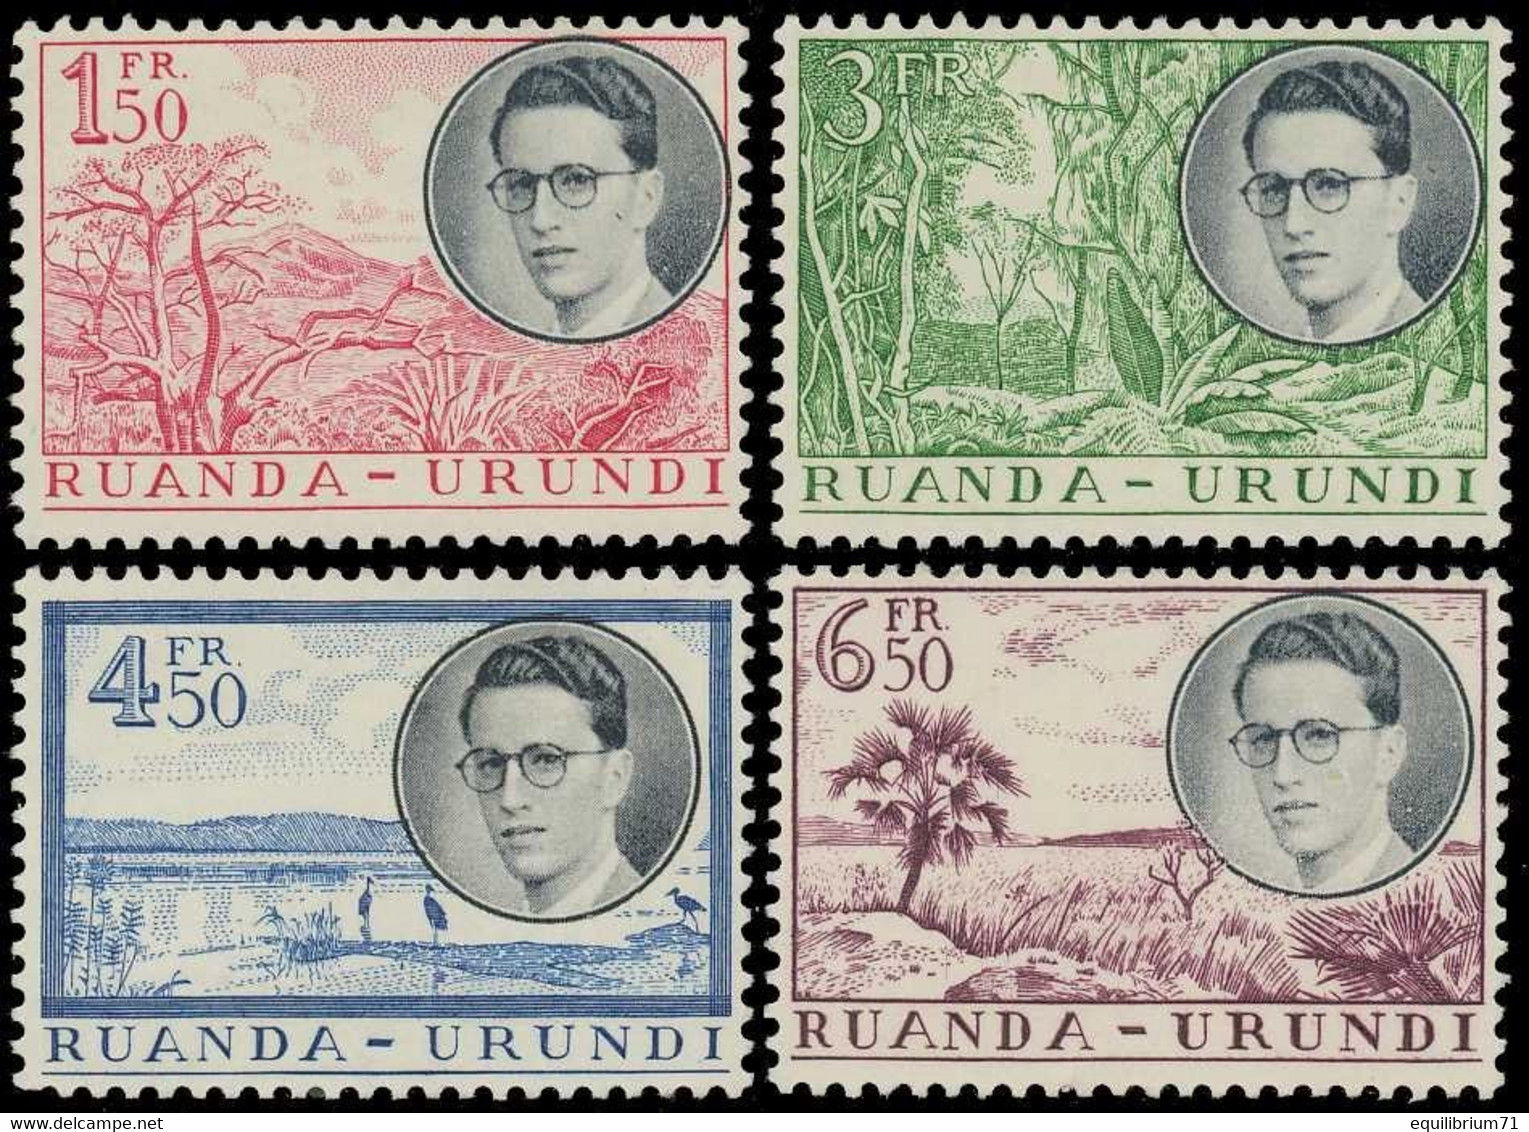 196/199* - Voyage Royal Au / Koninklijke Reis Naar / Königliche Reise Nach / Royal Trip To - RUANDA - URUNDI - Unused Stamps